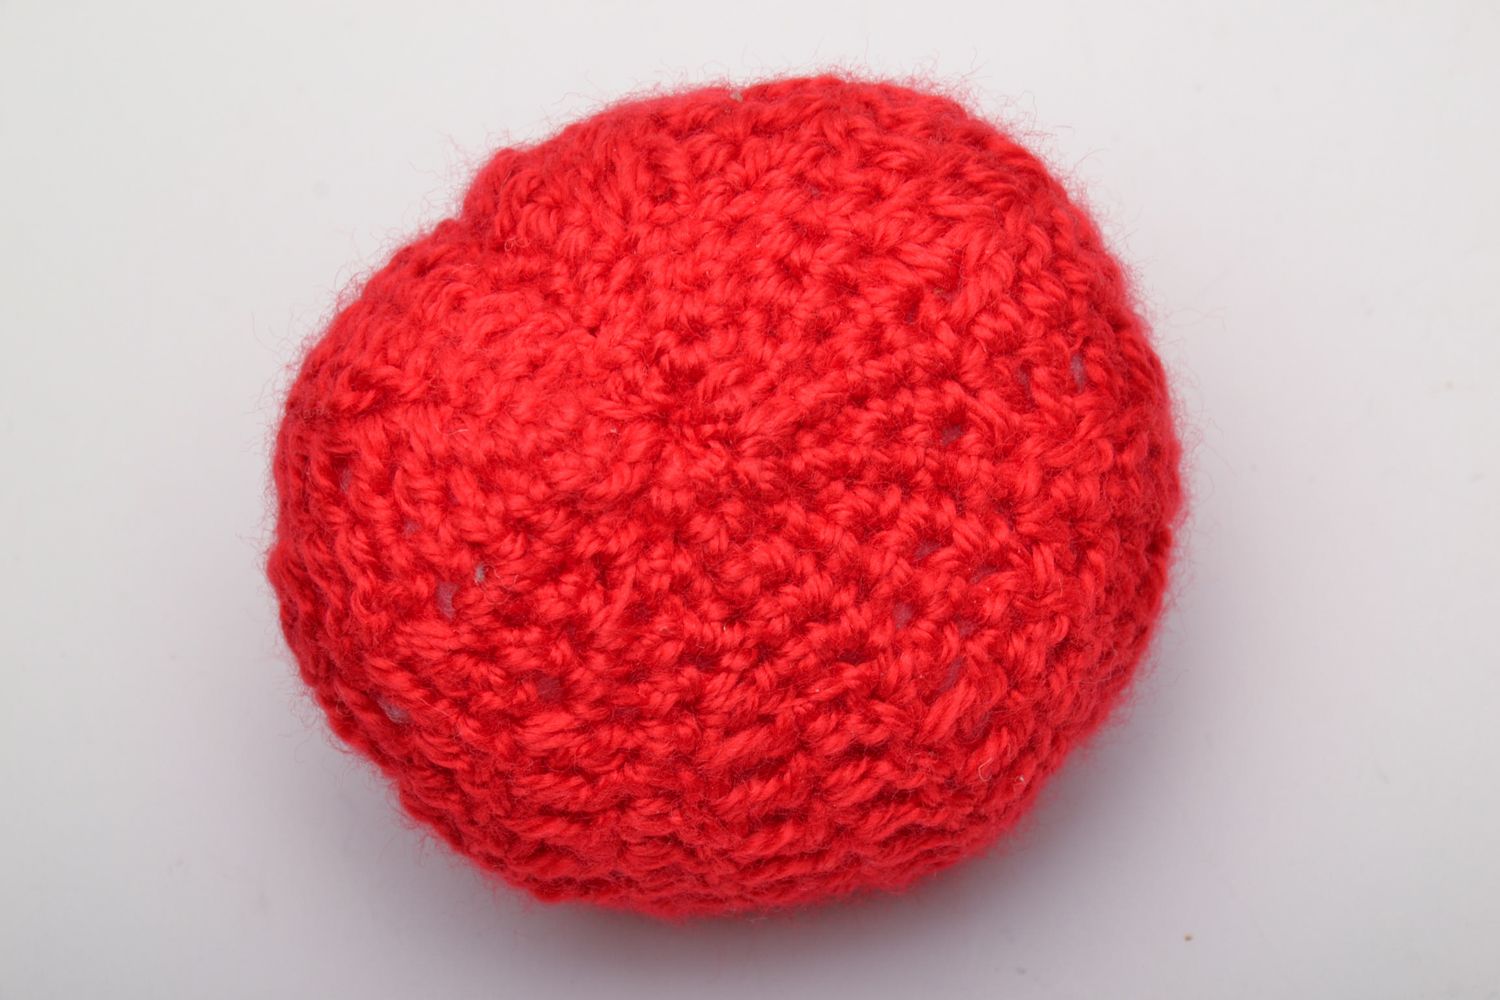 Soft crochet toy tomato photo 3